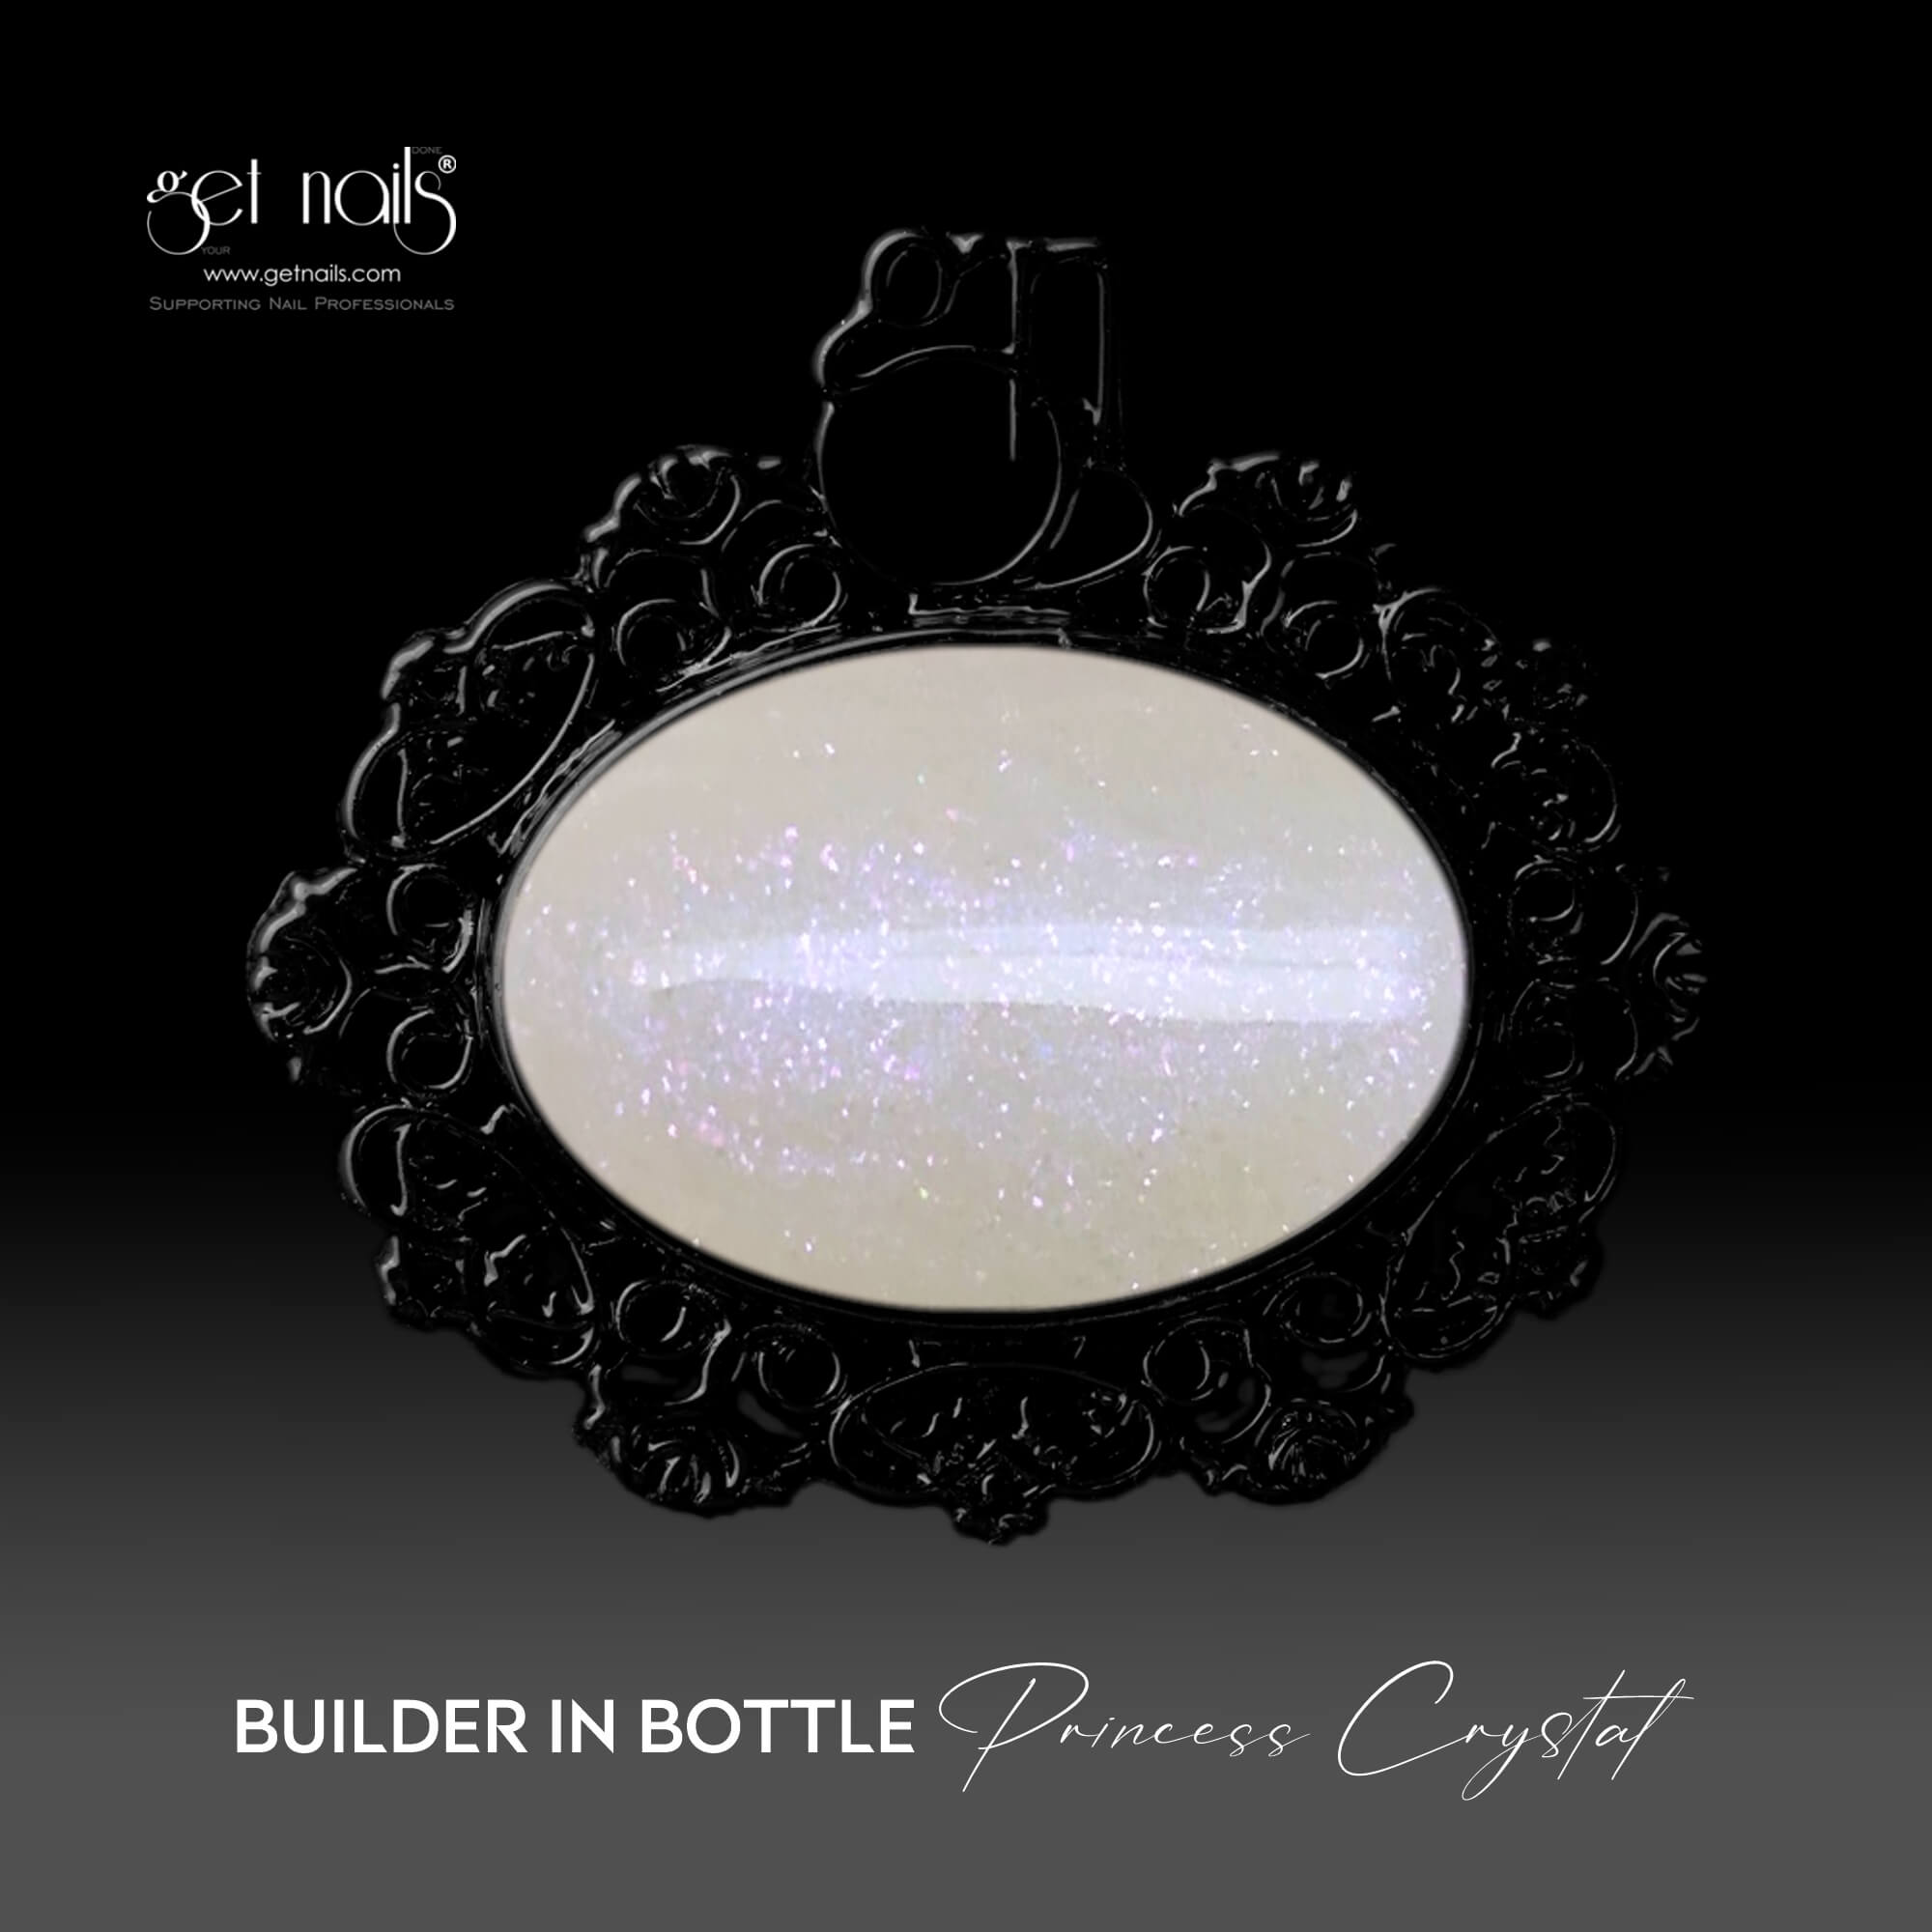 Get Nails Austria - Builder in Bottle Princess Crystal 15g